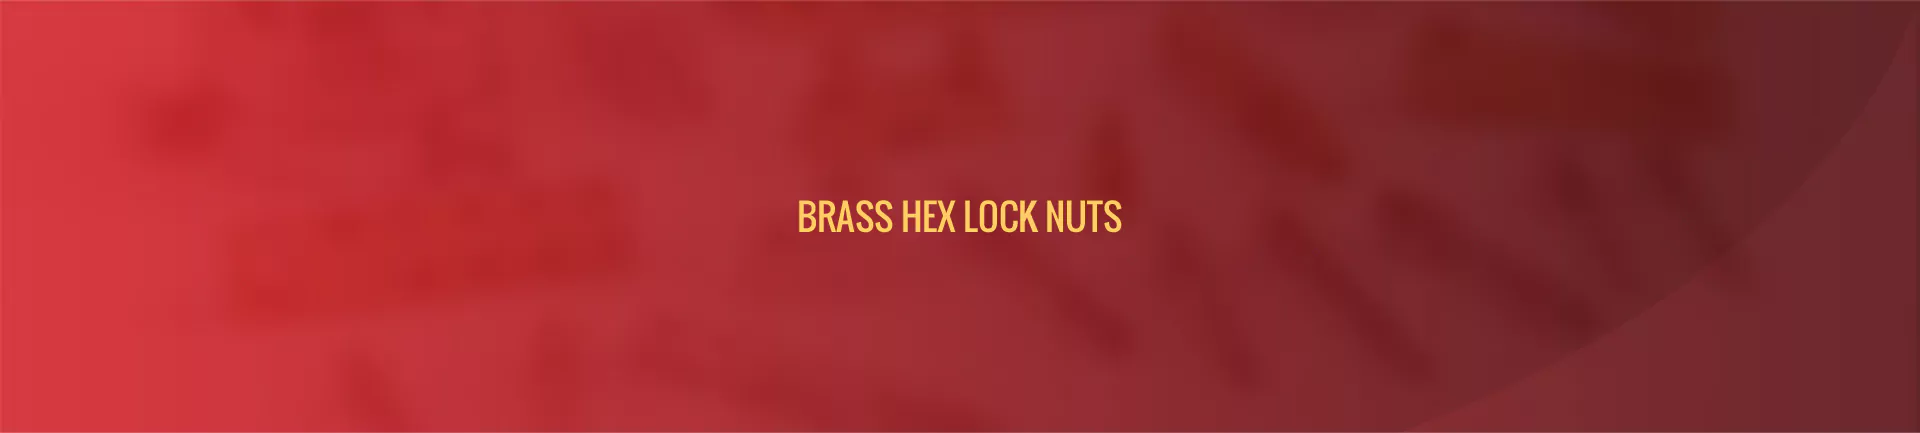 brass-hex-lock-nuts-banner